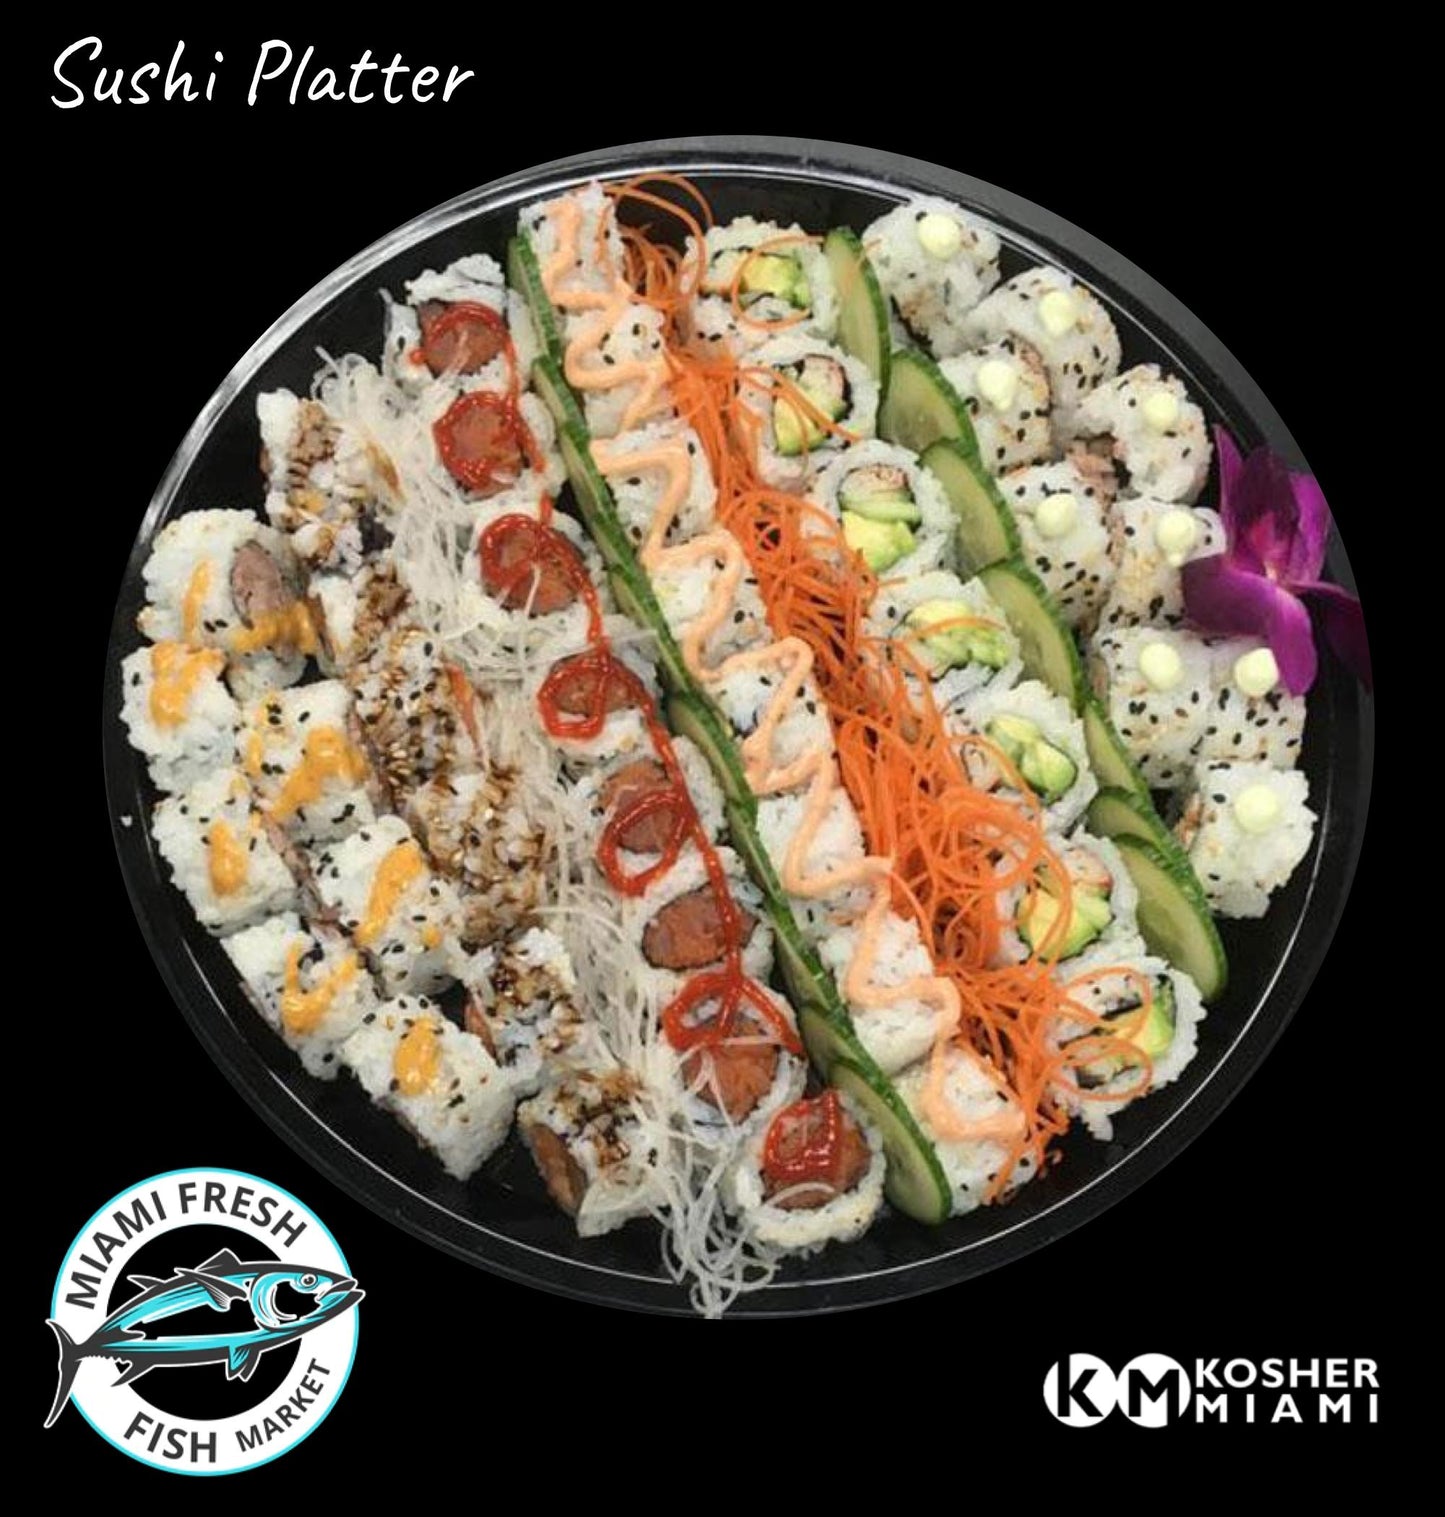 basic-sushi_platter-6-rolls-miami-fresh-fish-market